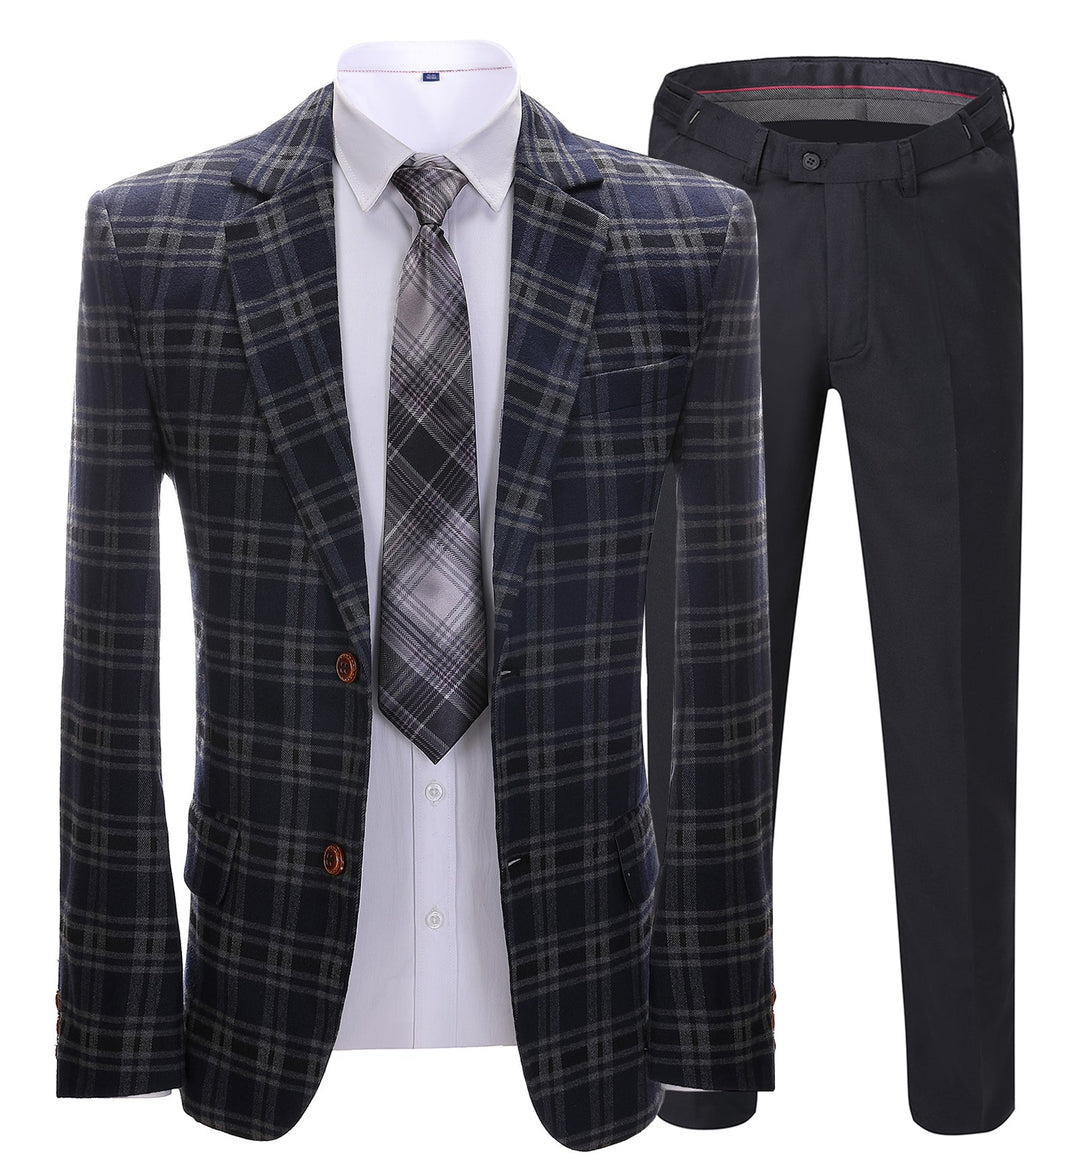 Mens Suit Business 2 Pieces Formal Navy Plaid Notch Lapel Tuxedos (Blazer+Pants) mens event wear